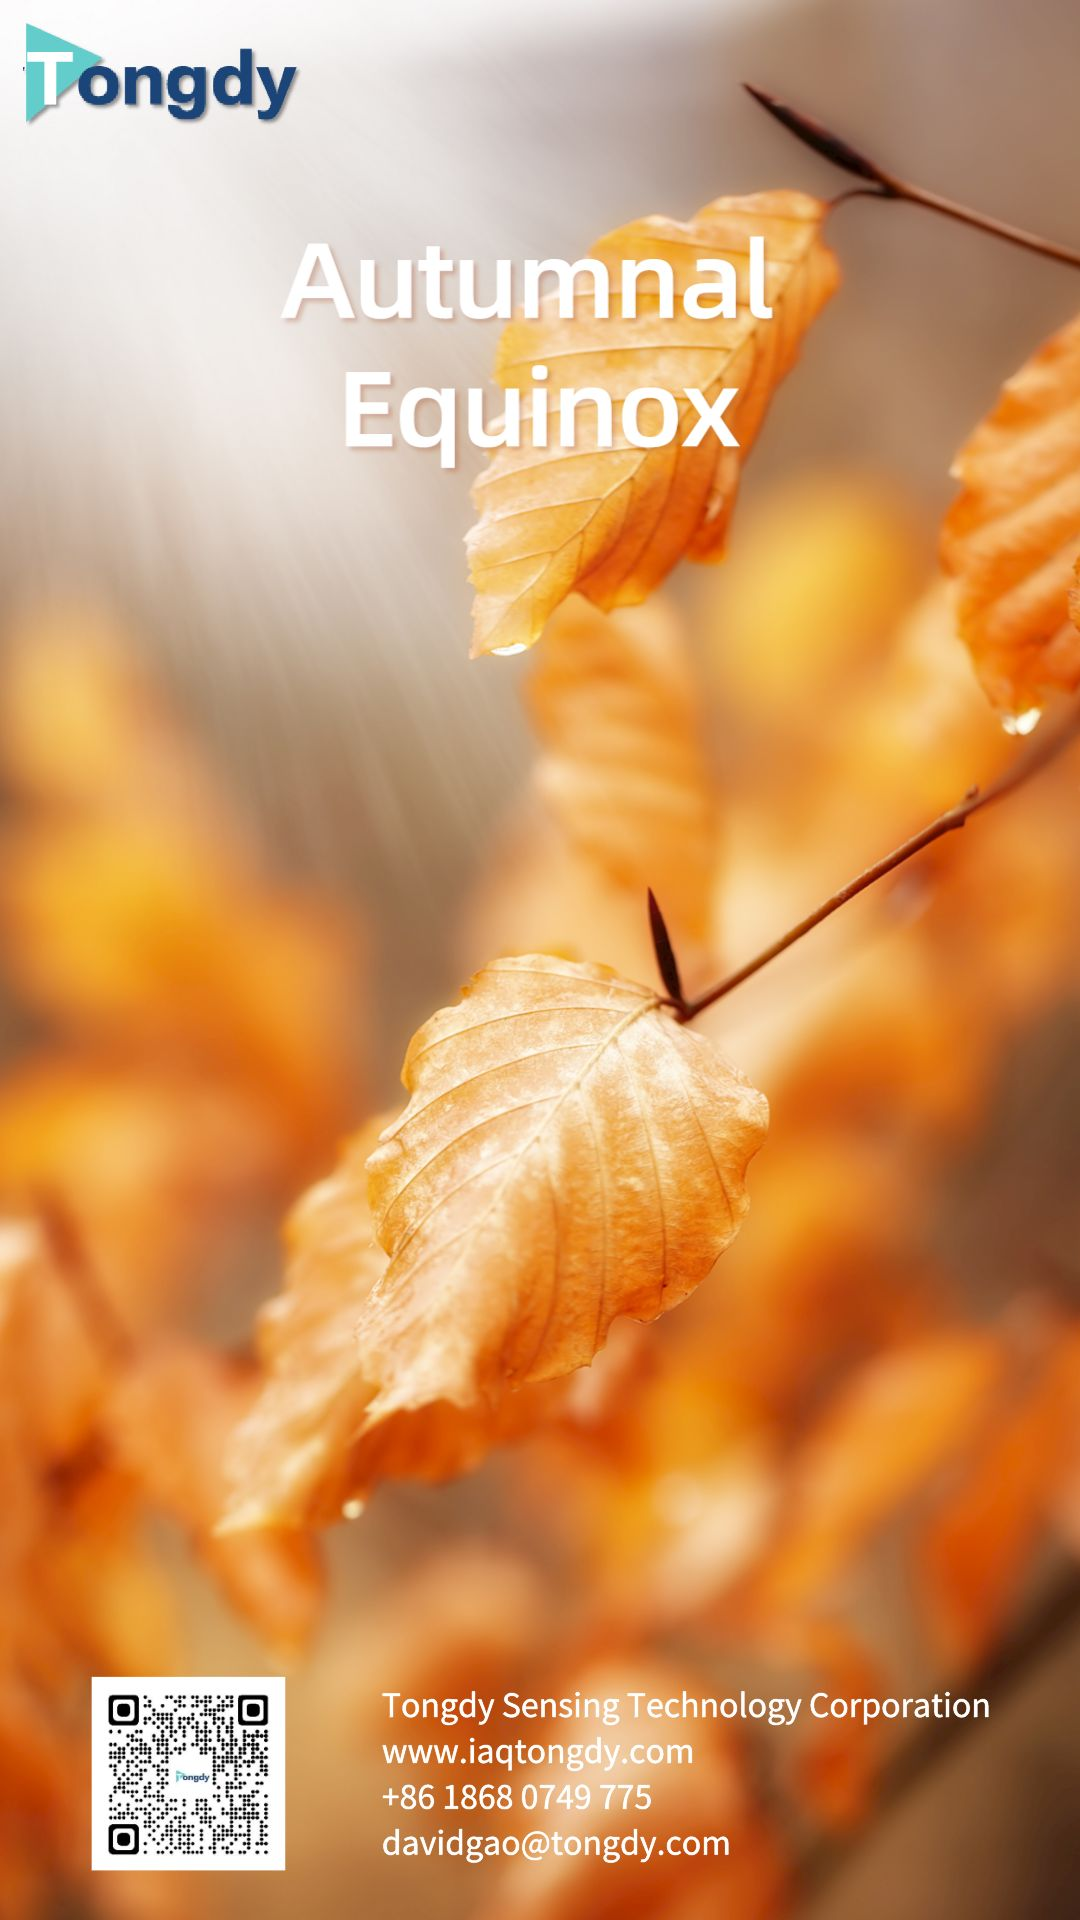 Autumnal Equinox